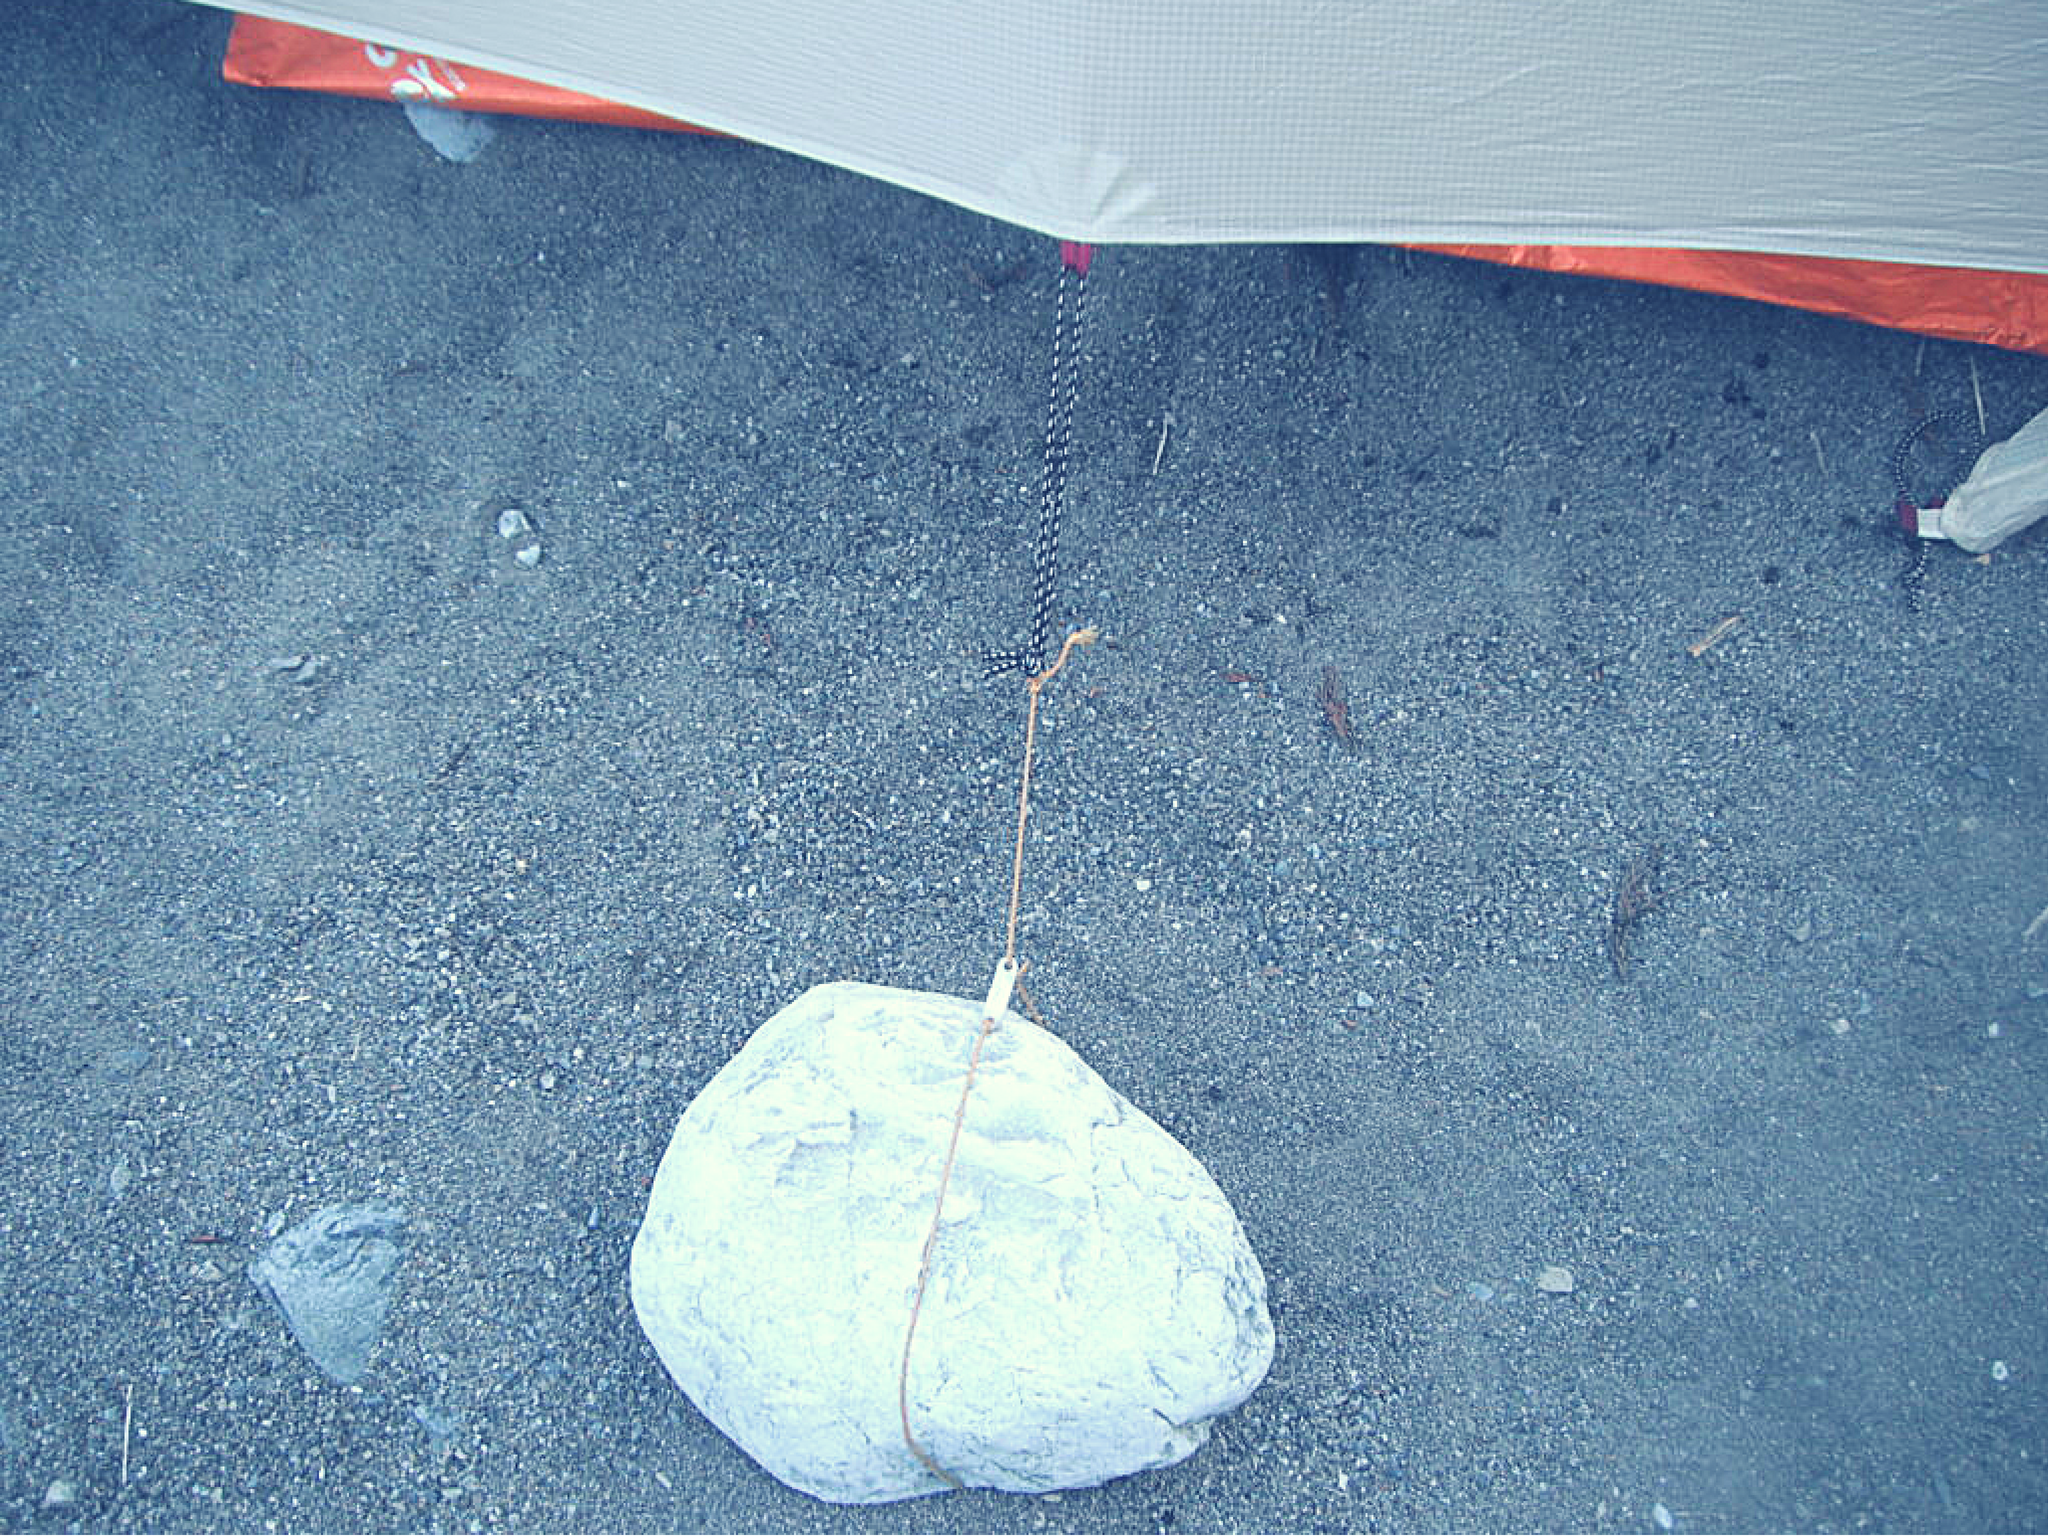 ソロキャンプ用のテント Mont Bell モンベル ステラリッジテント1型 レビュー ひとりキャンプと山道具